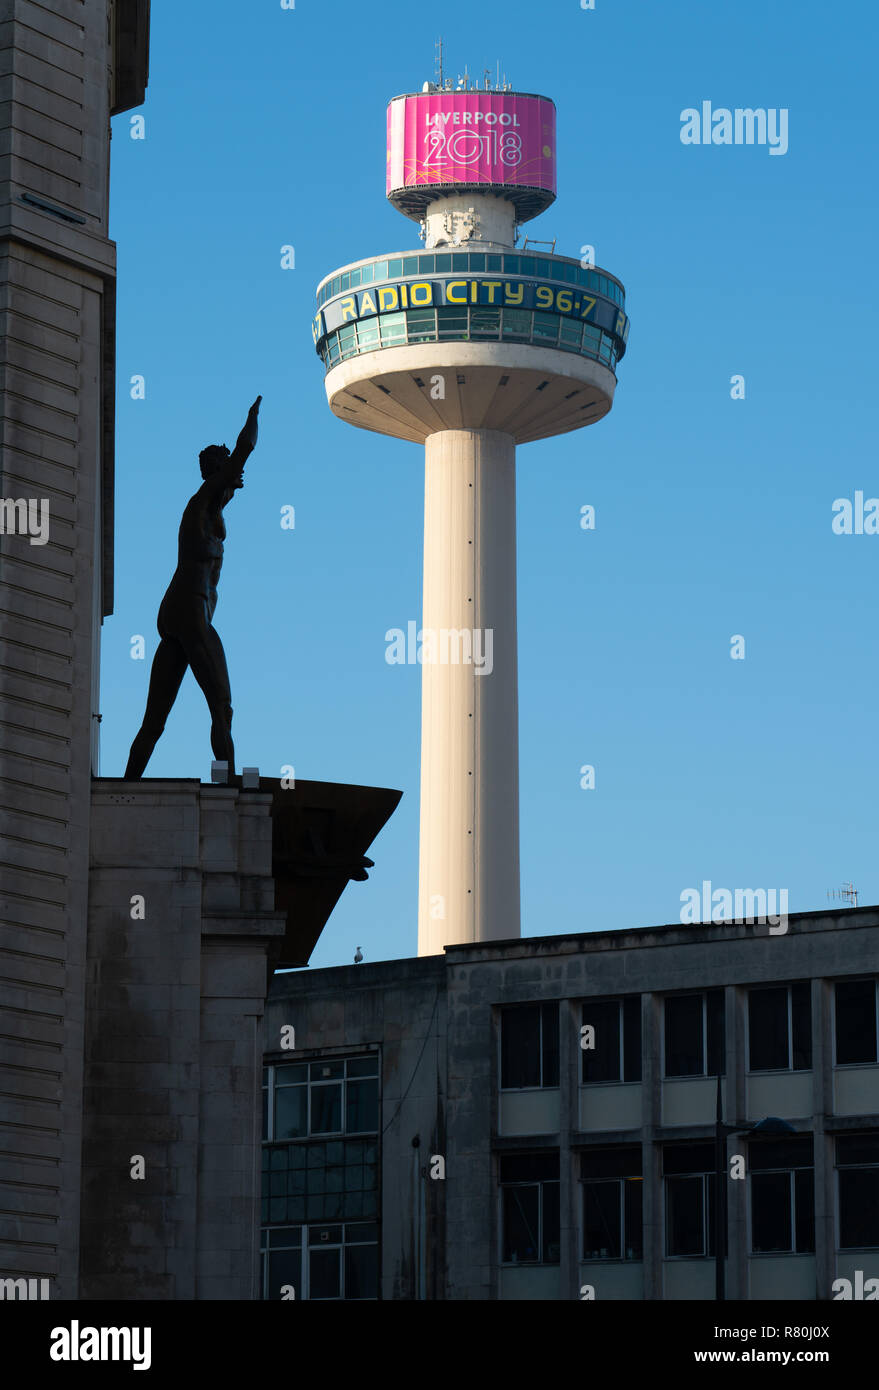 St John's Faro, adesso la Radio City Tower, che domina il centro di Liverpool, Lewis della statua in primo piano. Immagine presa nel novembre 2018. Foto Stock